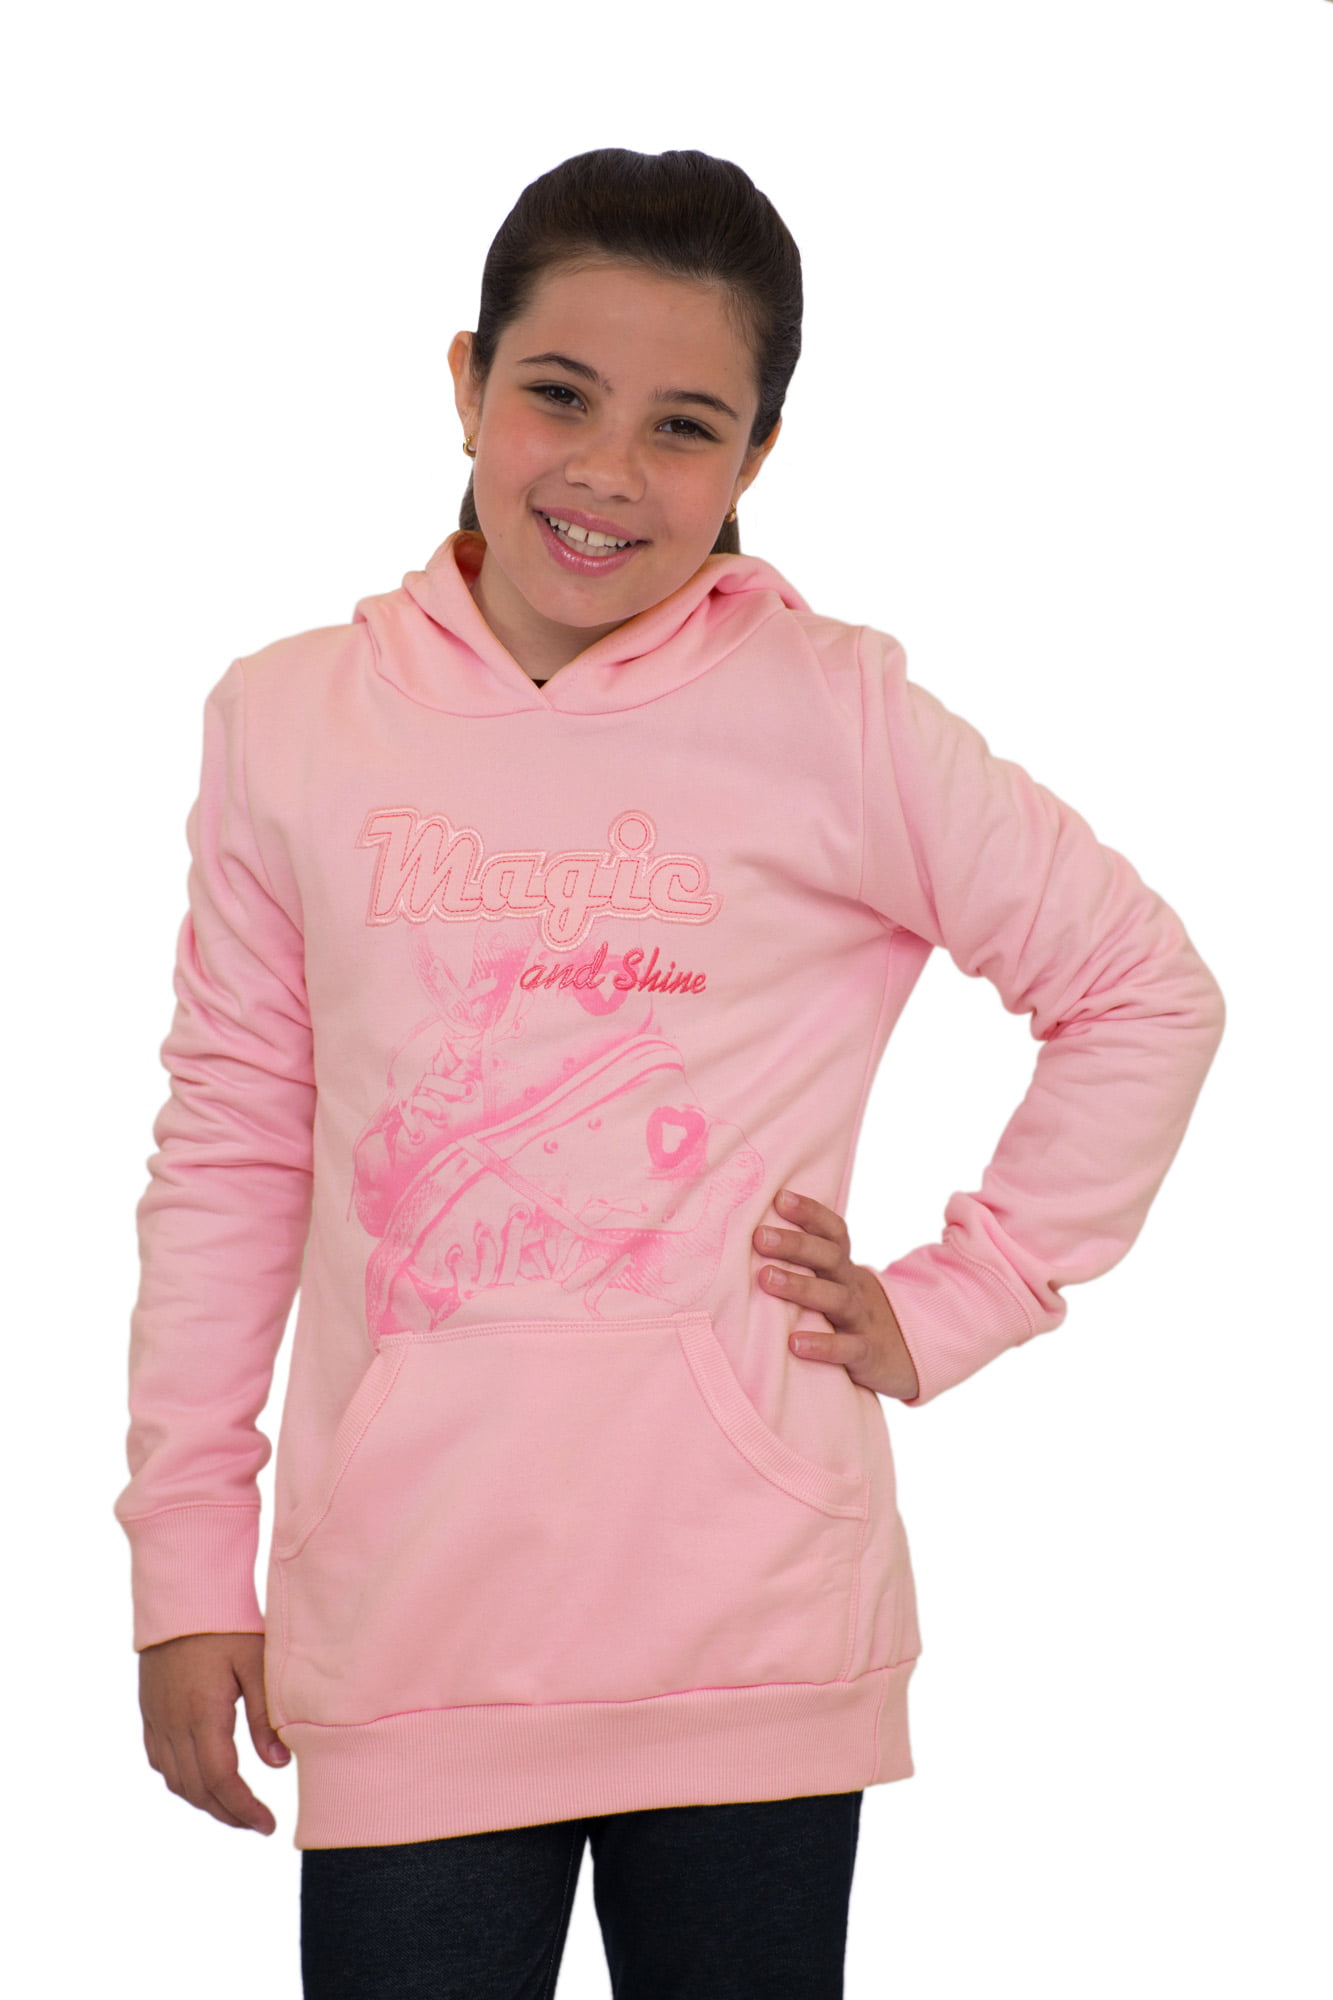 Tween Girls Hoodie Sweater Teen Graphic Sweatshirt Pulla Bulla Sizes 10 ...